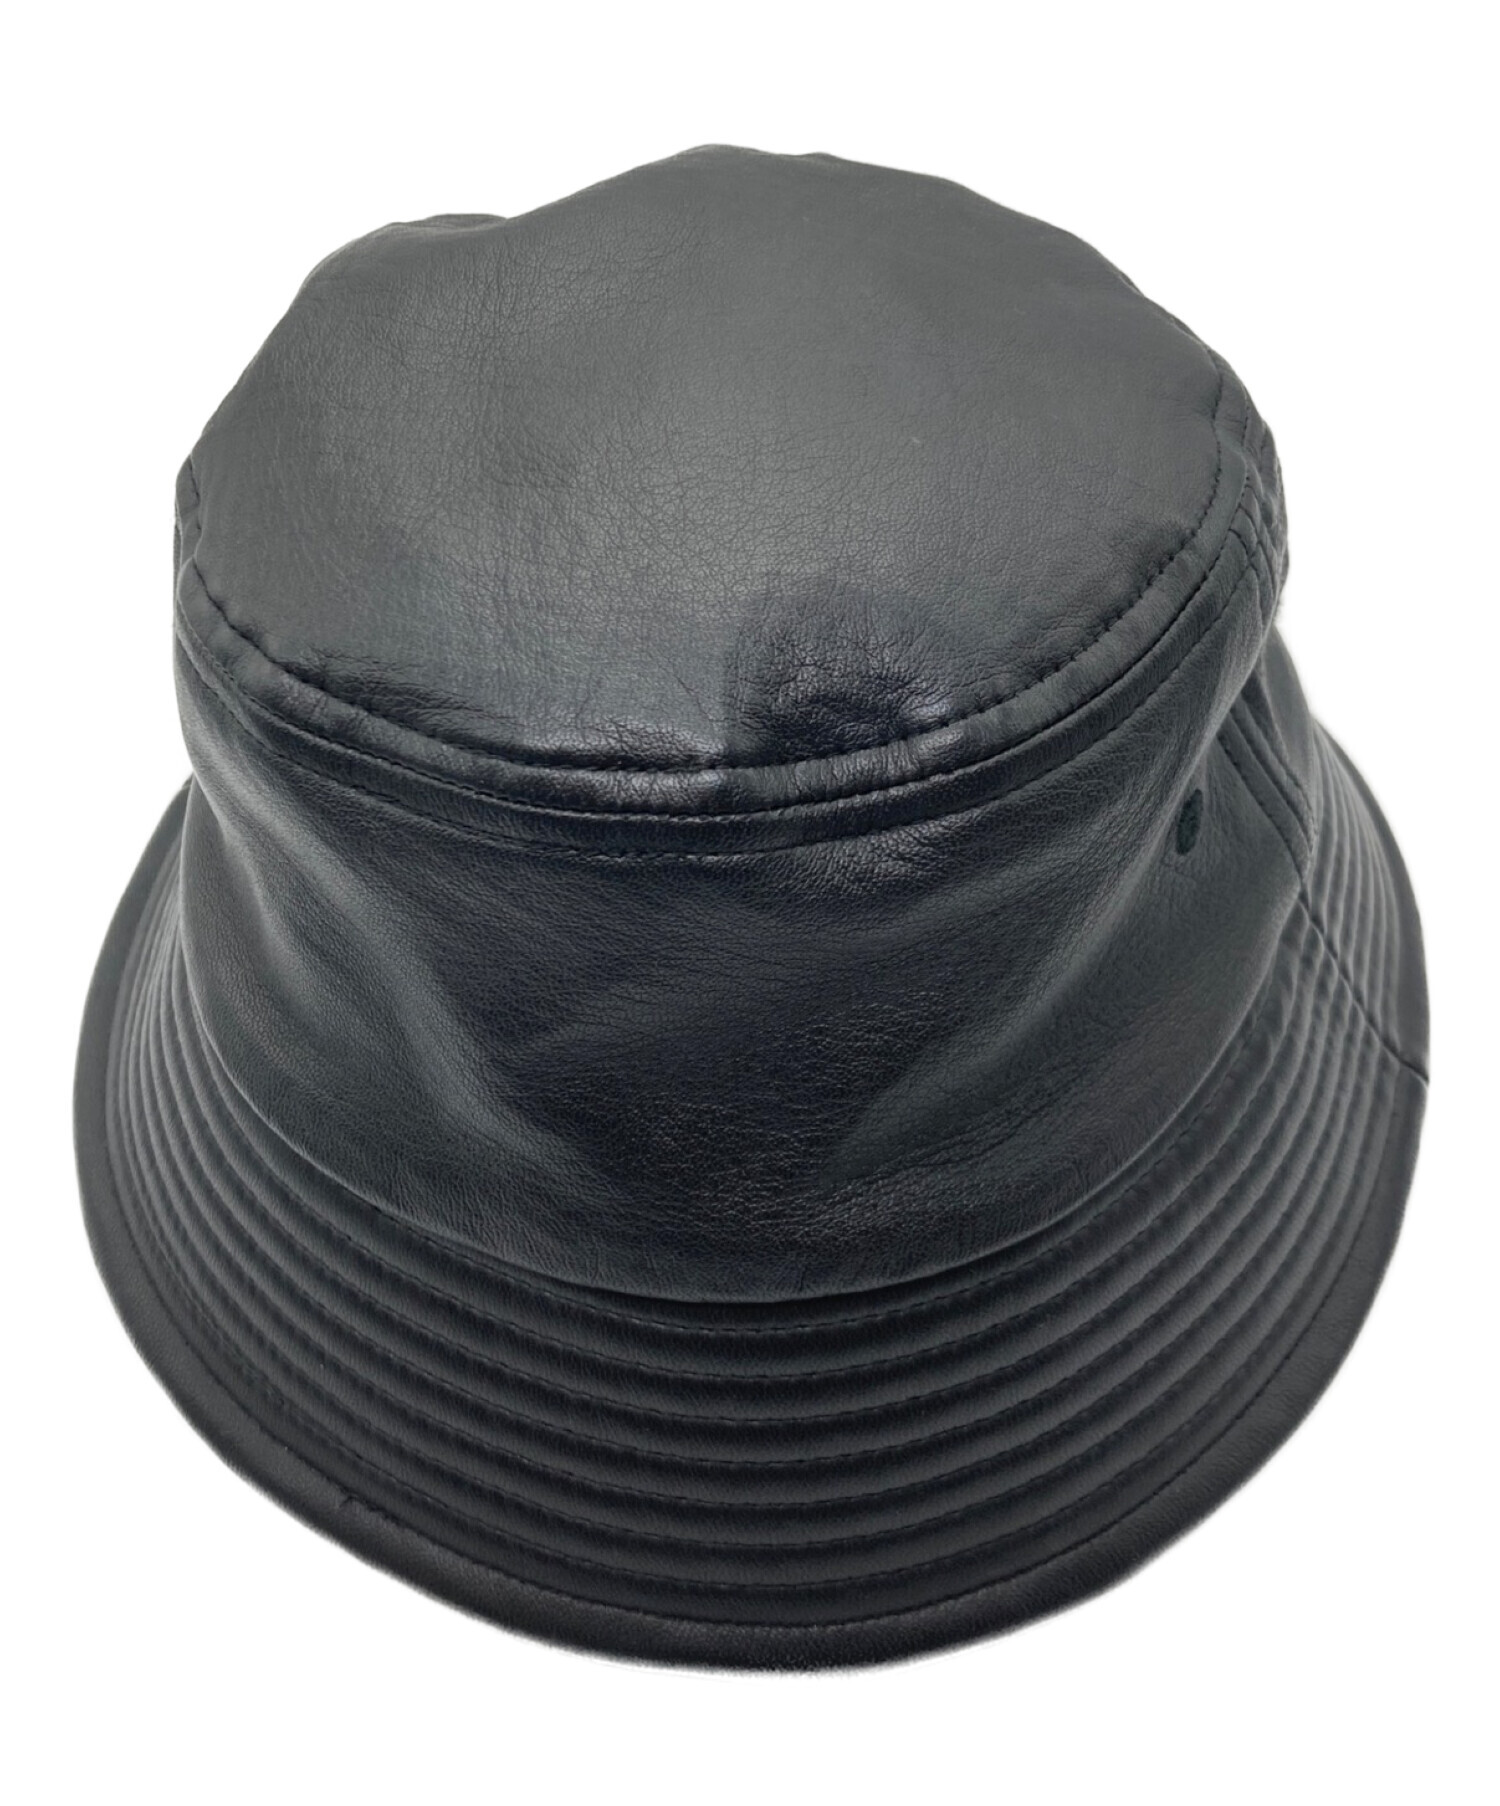 日本製得価COOTIE/ Leather バケットハットBlack 希少Mサイズ 帽子